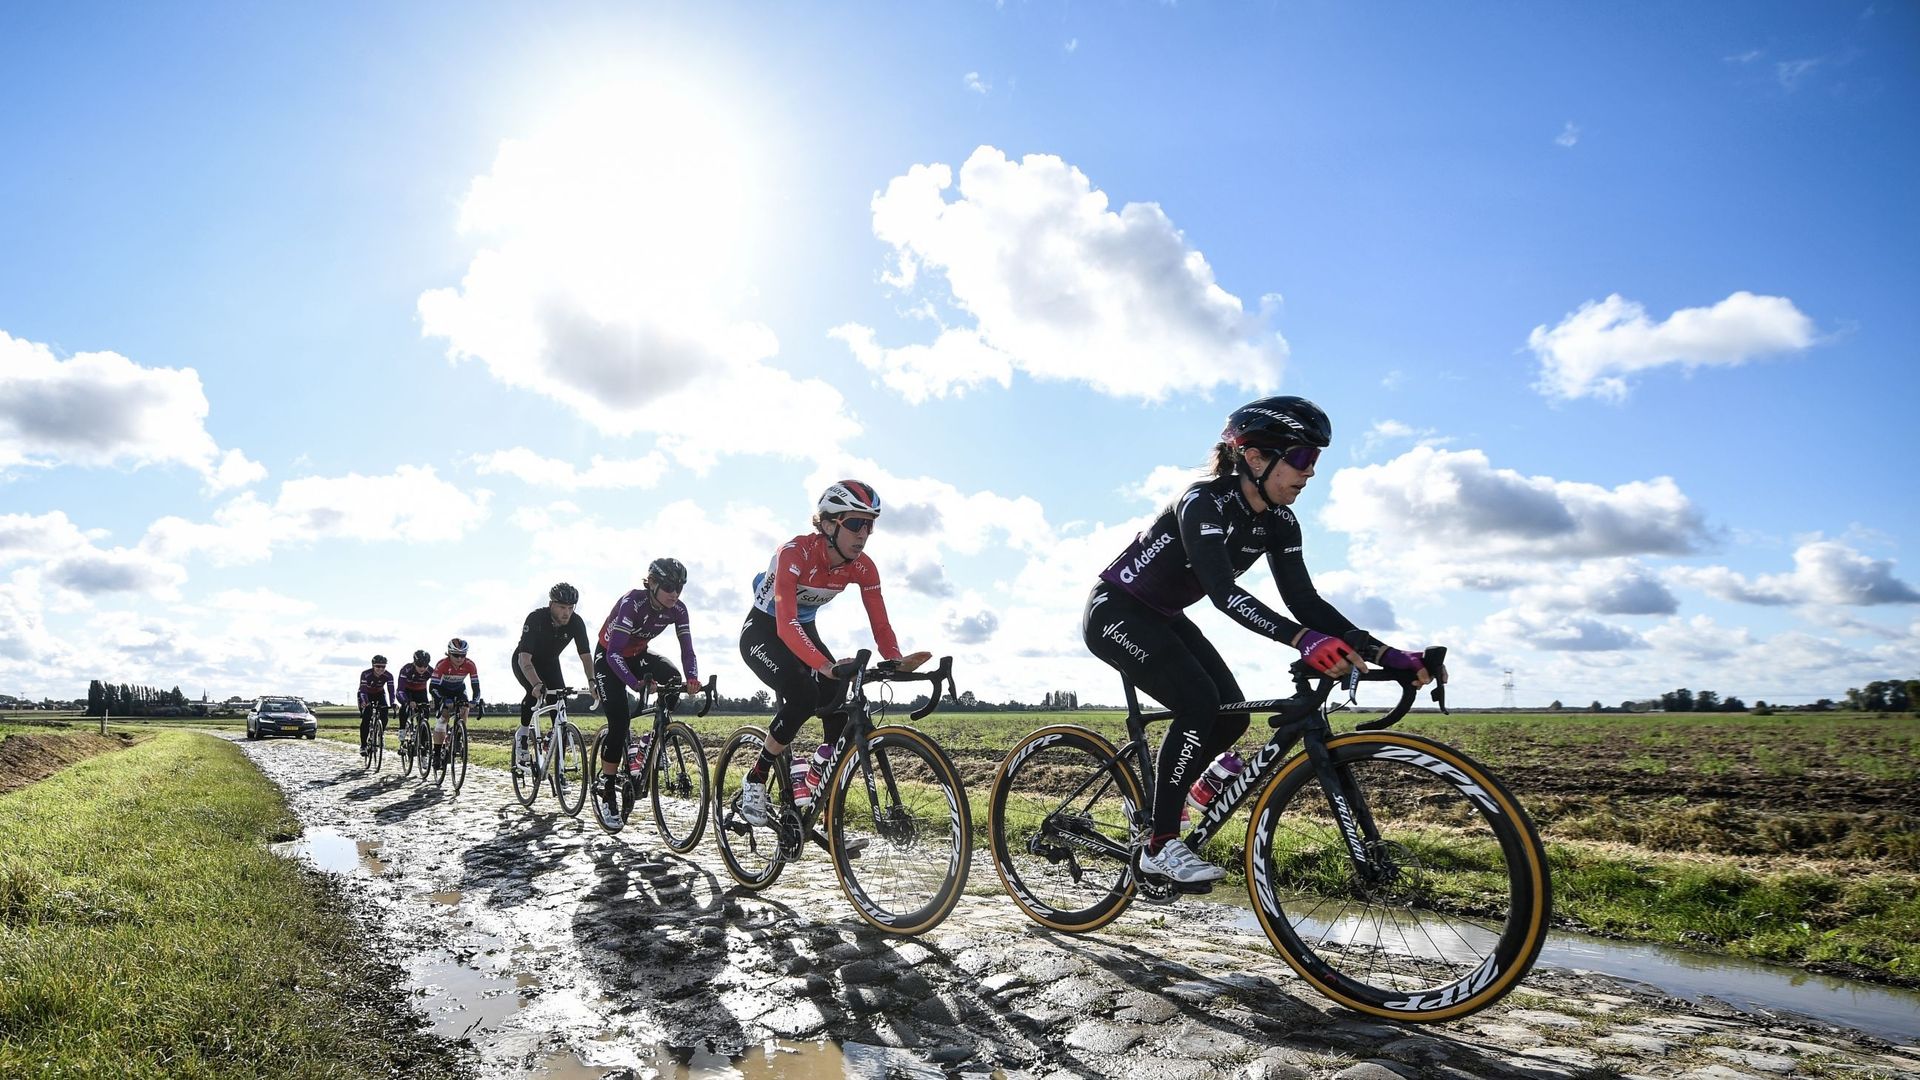 Si Paris-Roubaix est un rendez-vous immanquable du calendrier cycliste masculin, la course française accueillera pour la première fois le peloton féminin. Samedi, l’Enfer du Nord se tiendra sur 116,5 kilomètres et contiendra 17 secteurs pavés. Lotte Kopec